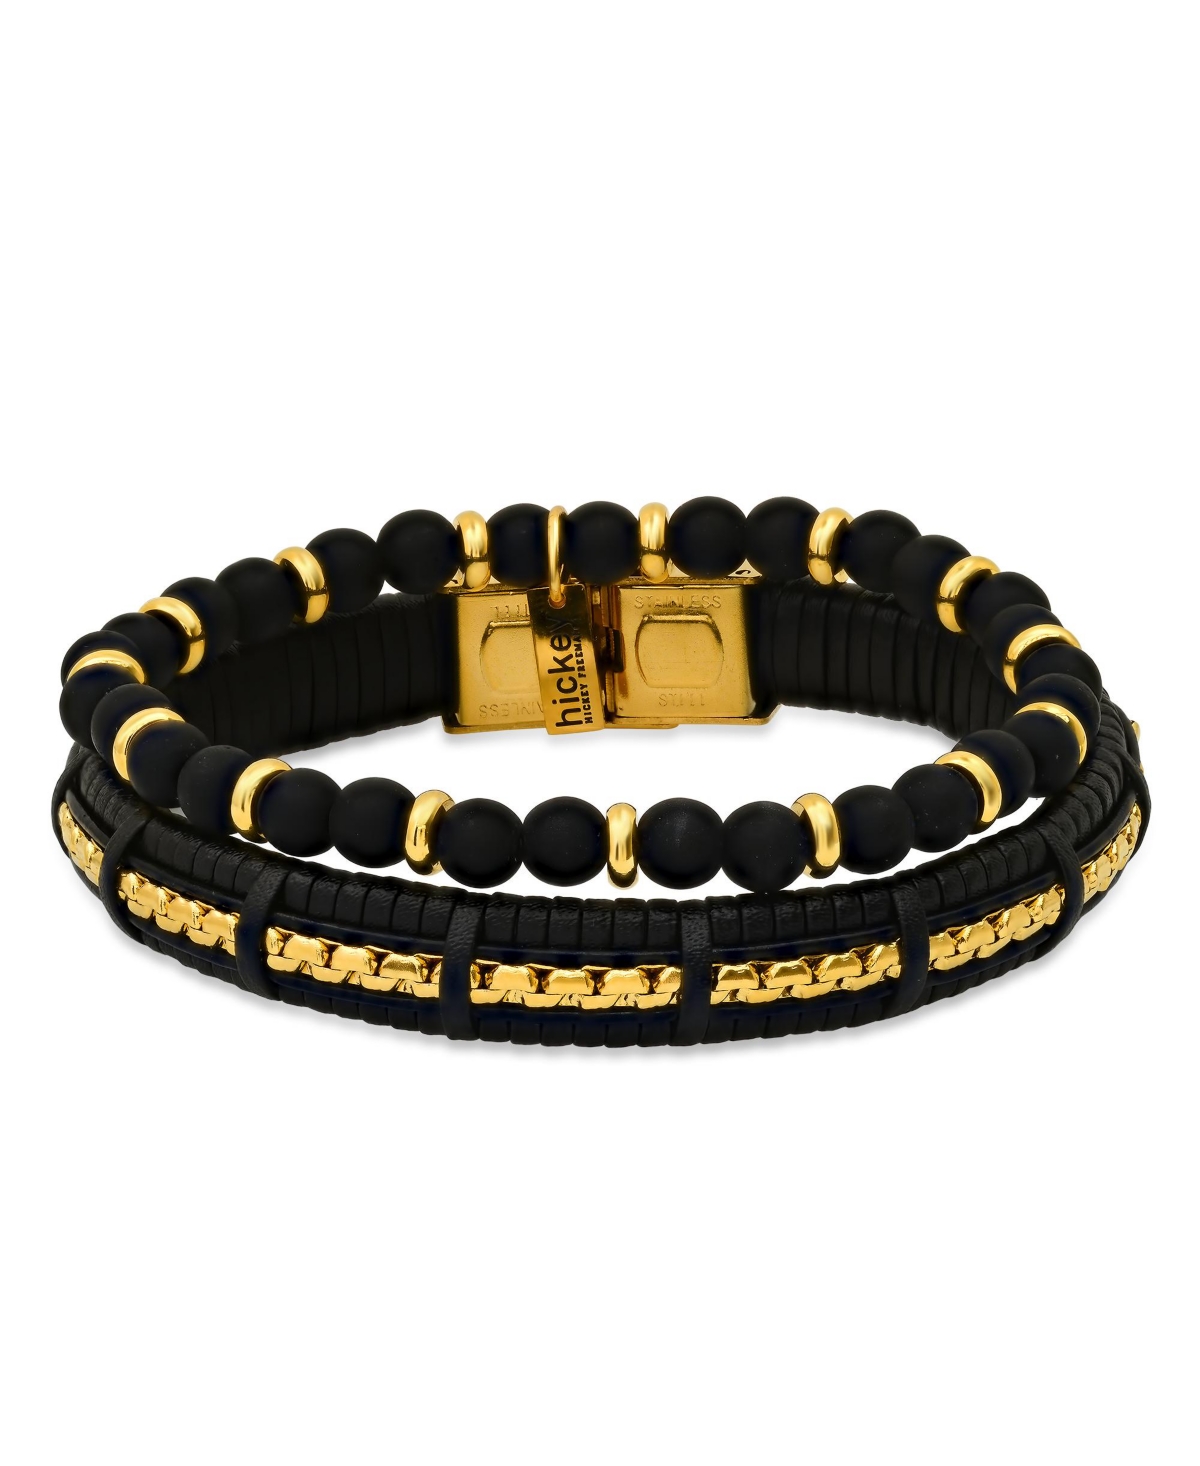 Hmy Jewelry Hickey By Hickey Freeman Genuine Leather Bracelet, 2 Piece Set In Gold